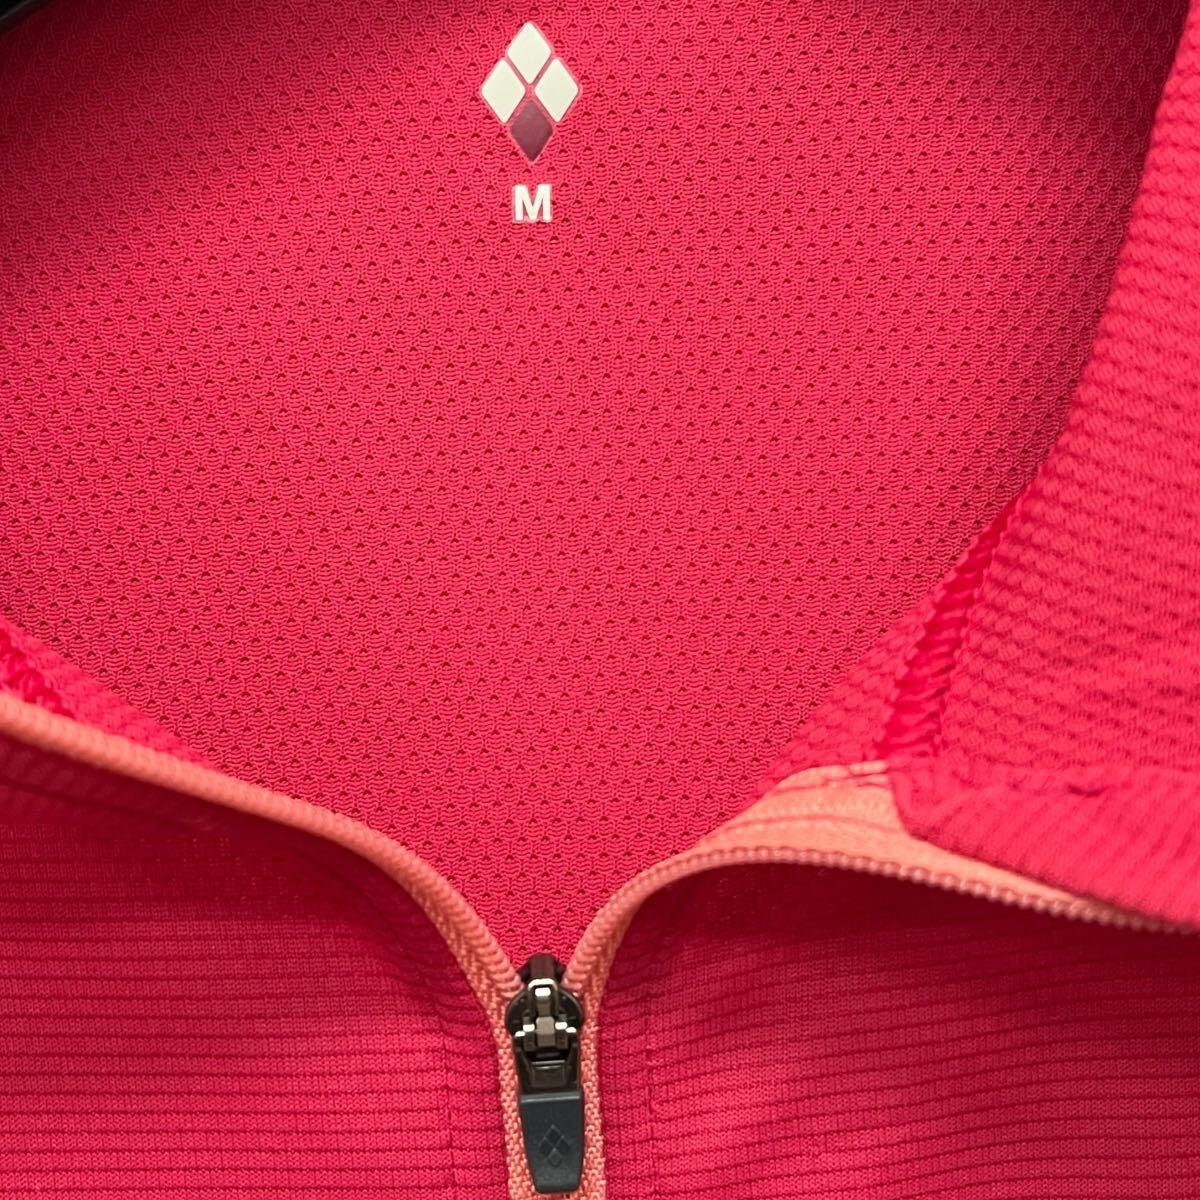 mont-bell /モンベル WOMEN's クールパーカ フルジップ フーディ ジャケット ピンク系 Mサイズ 裏地メッシュ 春夏パーカー O-2086の画像4